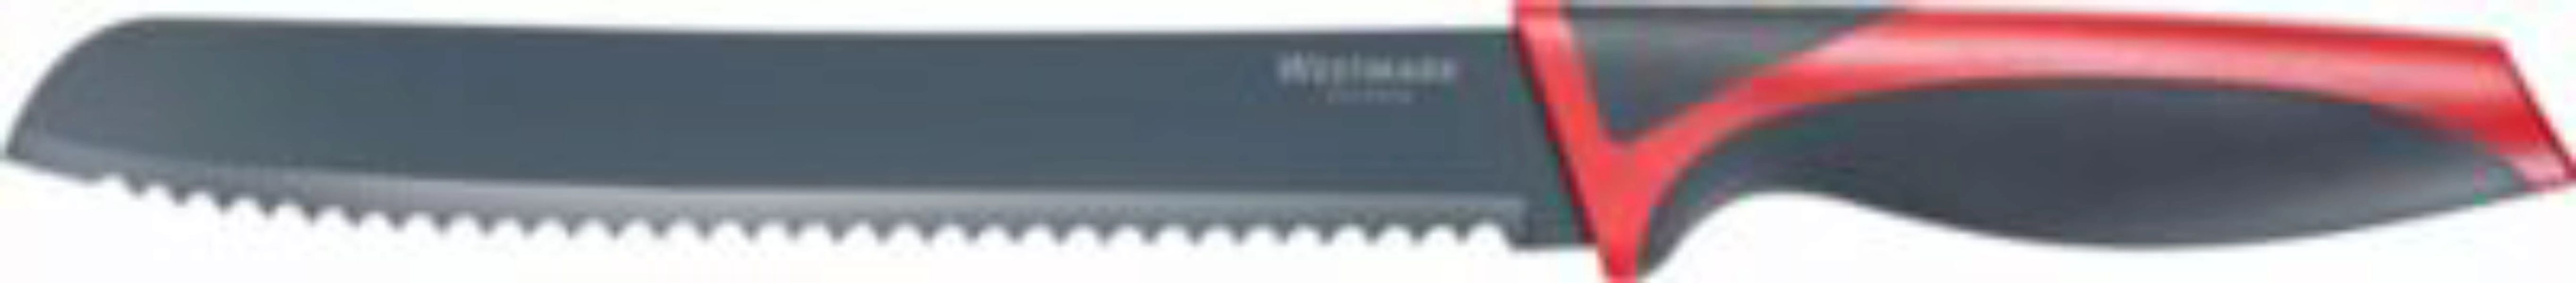 WESTMARK Brotmesser 18/10 Edelstahl schwarz/rot günstig online kaufen